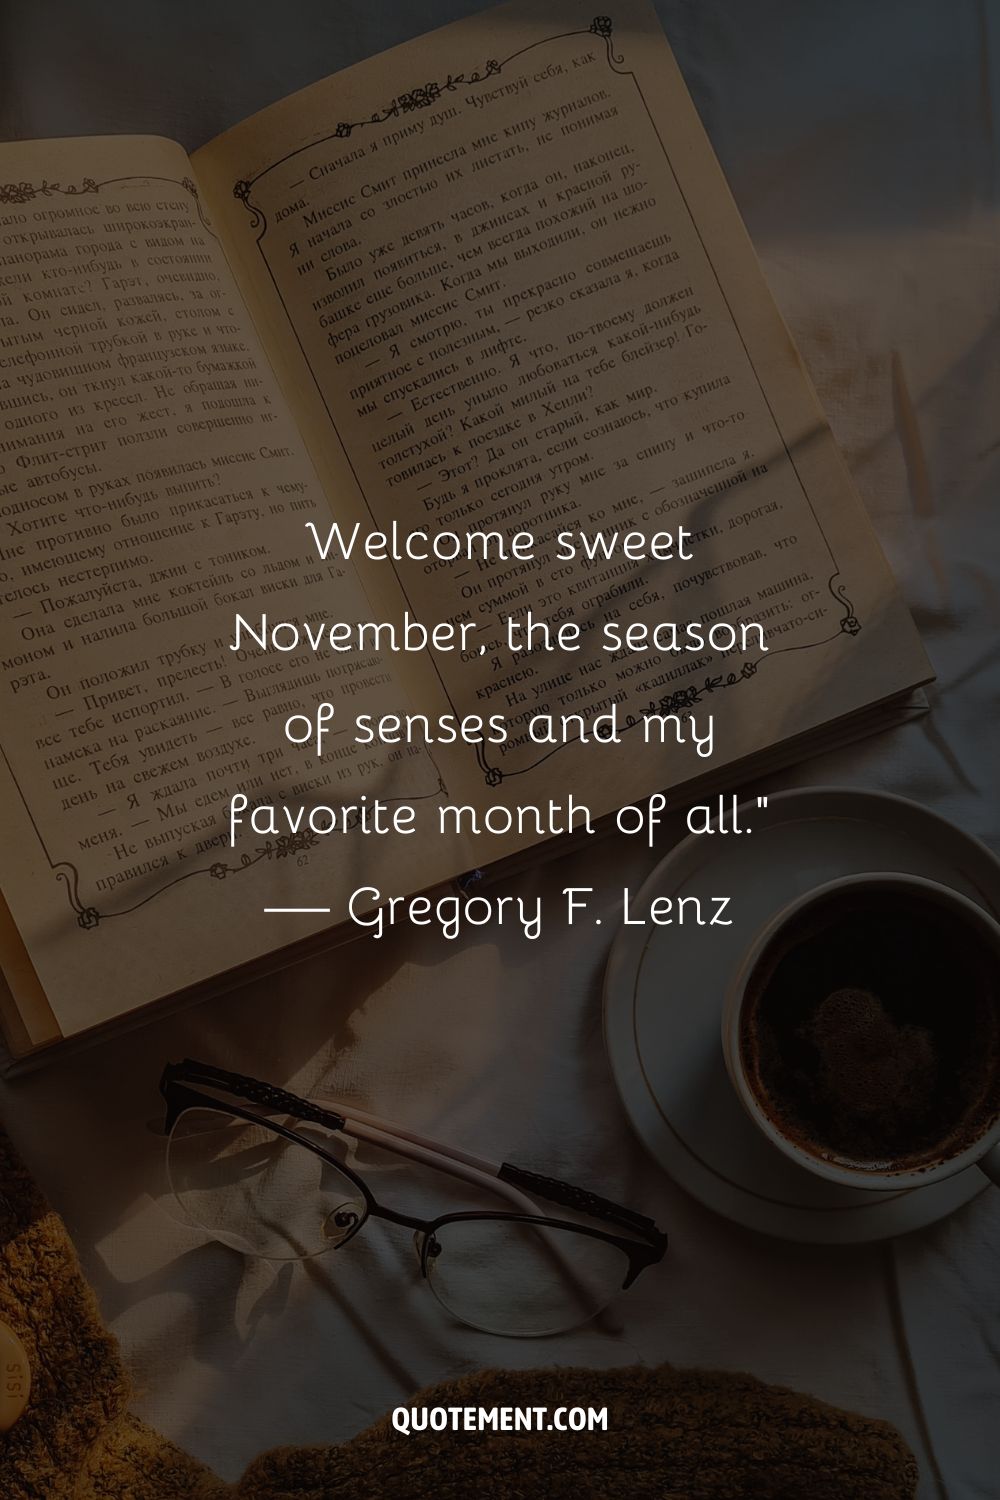 Imagen de un libro abierto junto a una taza de café que representa la mejor cita de noviembre.